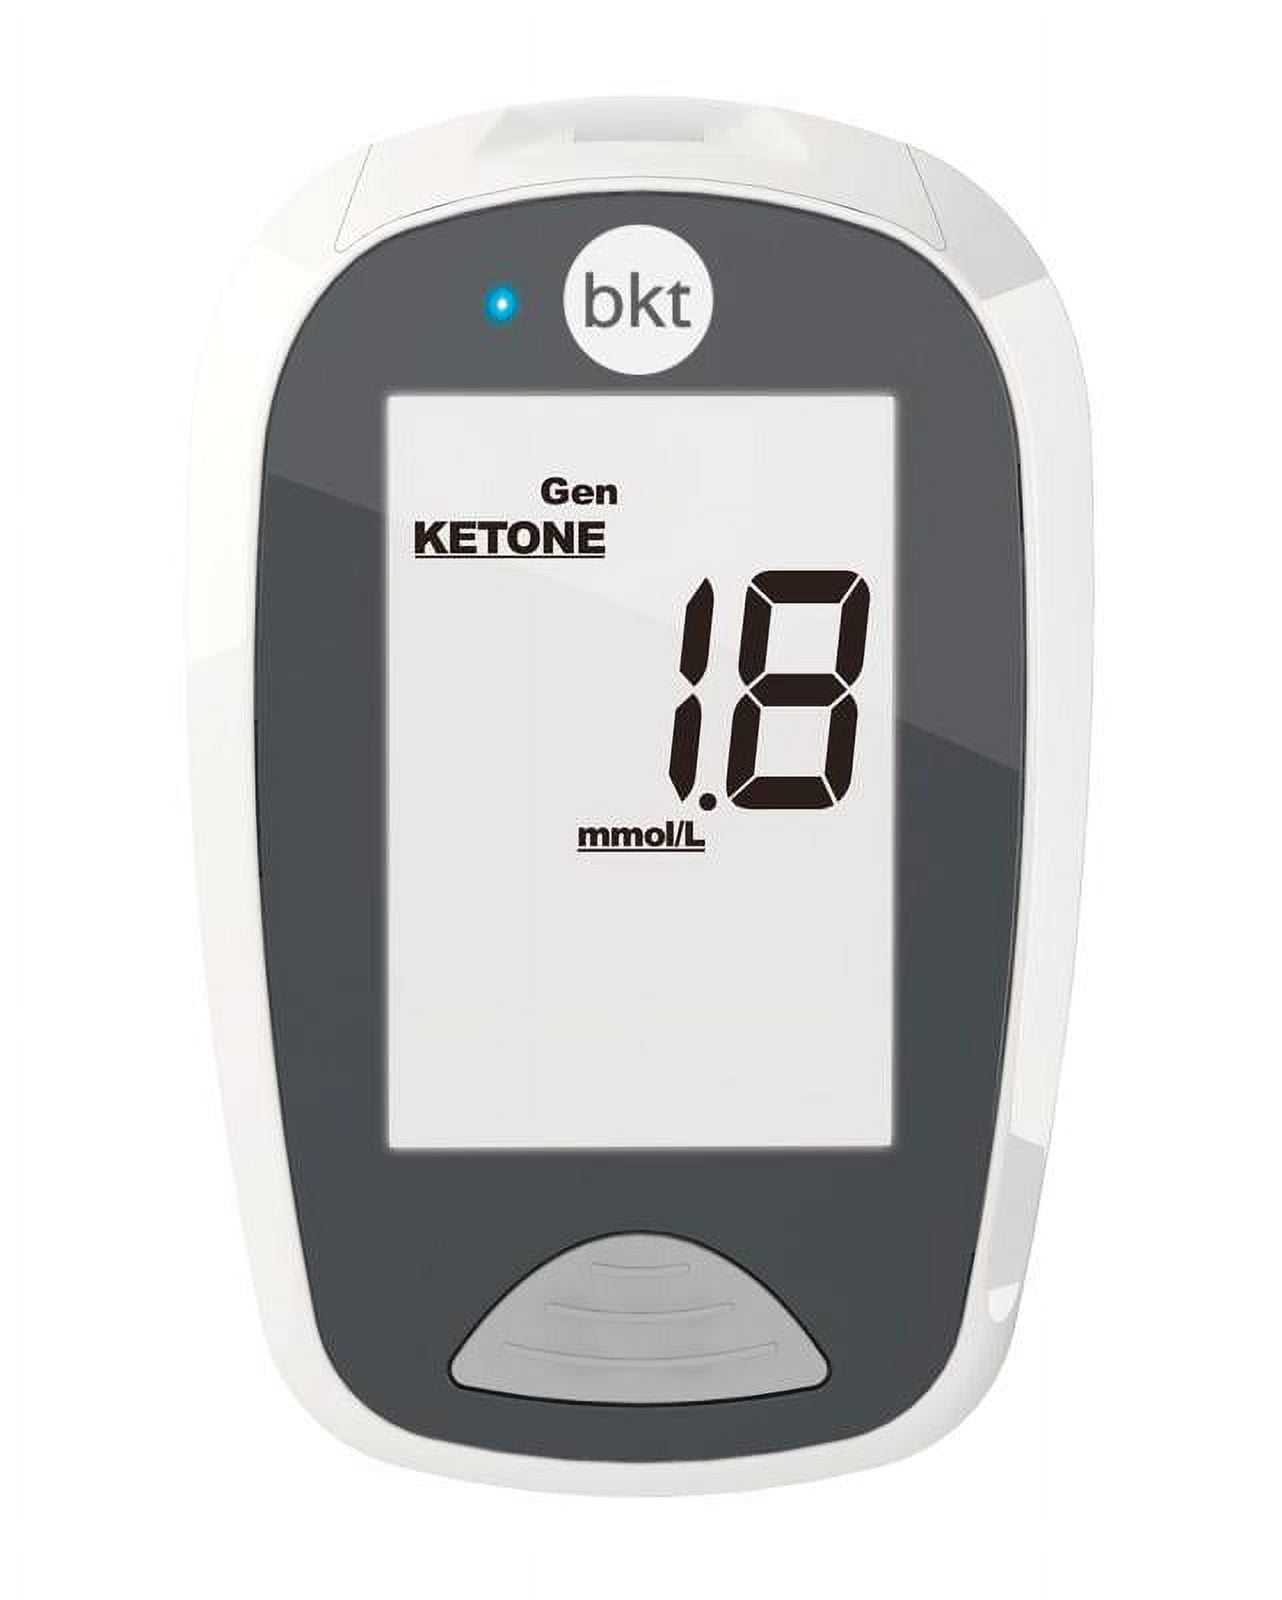  Coolker Ketone Meter Digital LCD Displays Testing with